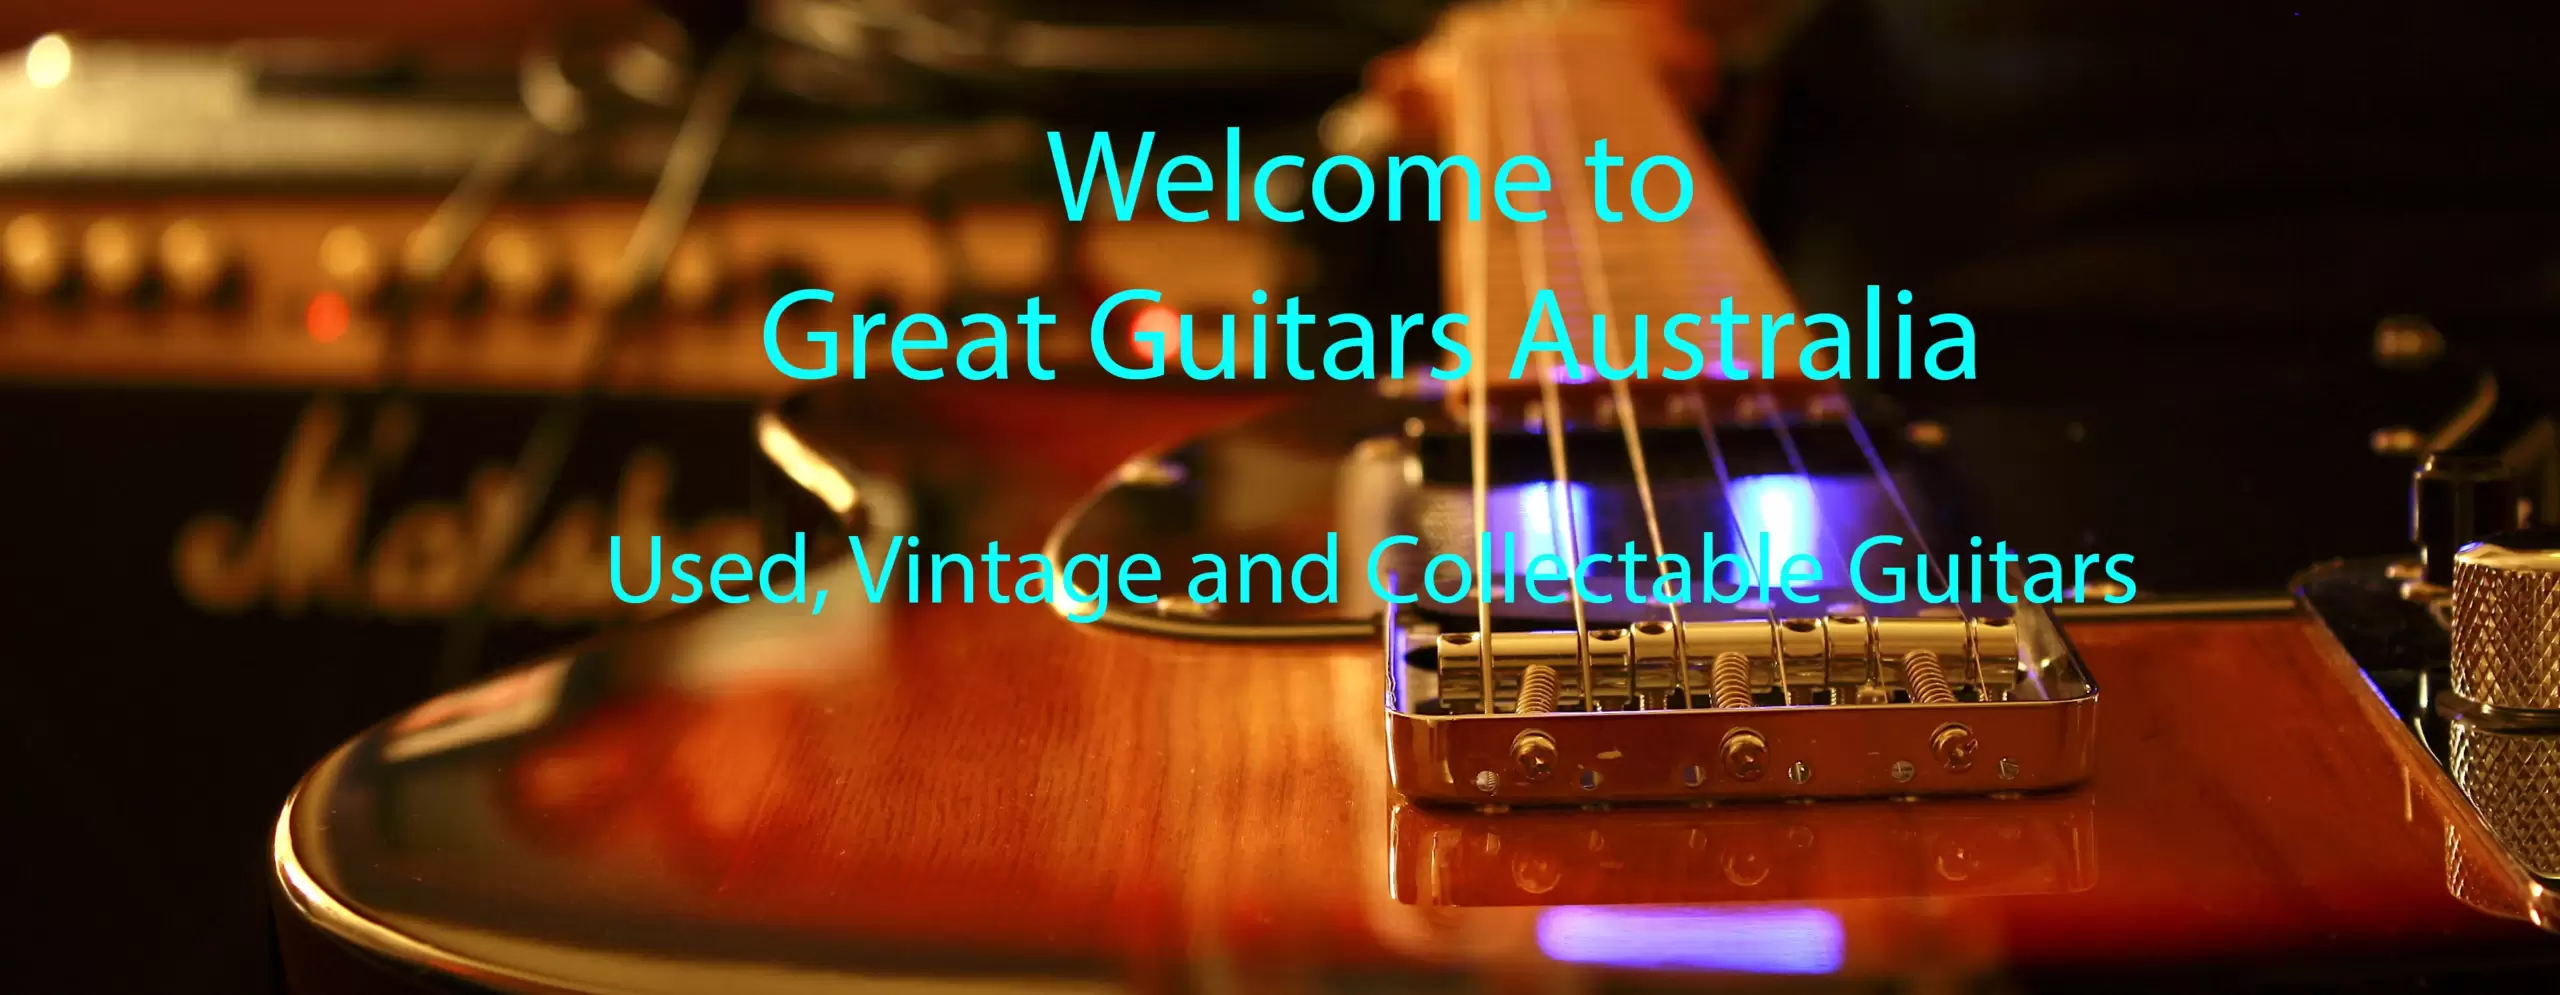 Great Guitars Australia - Vintage & Used Guitars For Sale